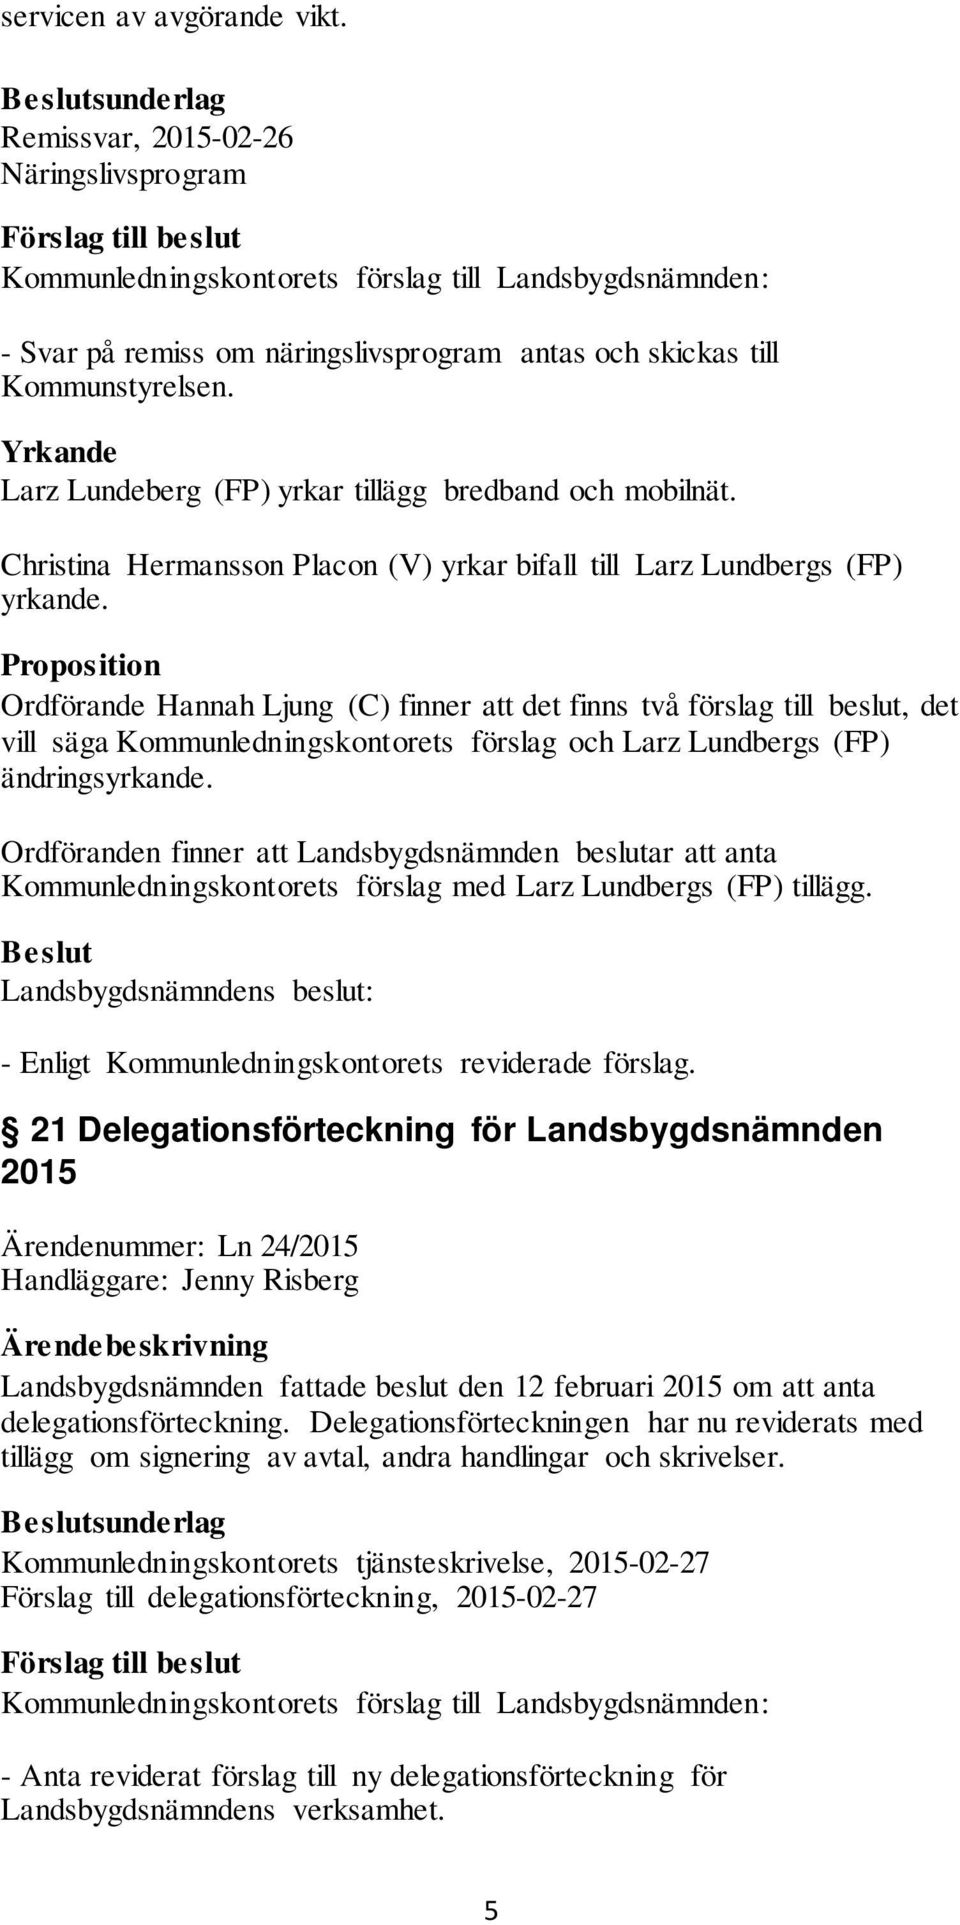 Proposition Ordförande Hannah Ljung (C) finner att det finns två förslag till beslut, det vill säga Kommunledningskontorets förslag och Larz Lundbergs (FP) ändringsyrkande.